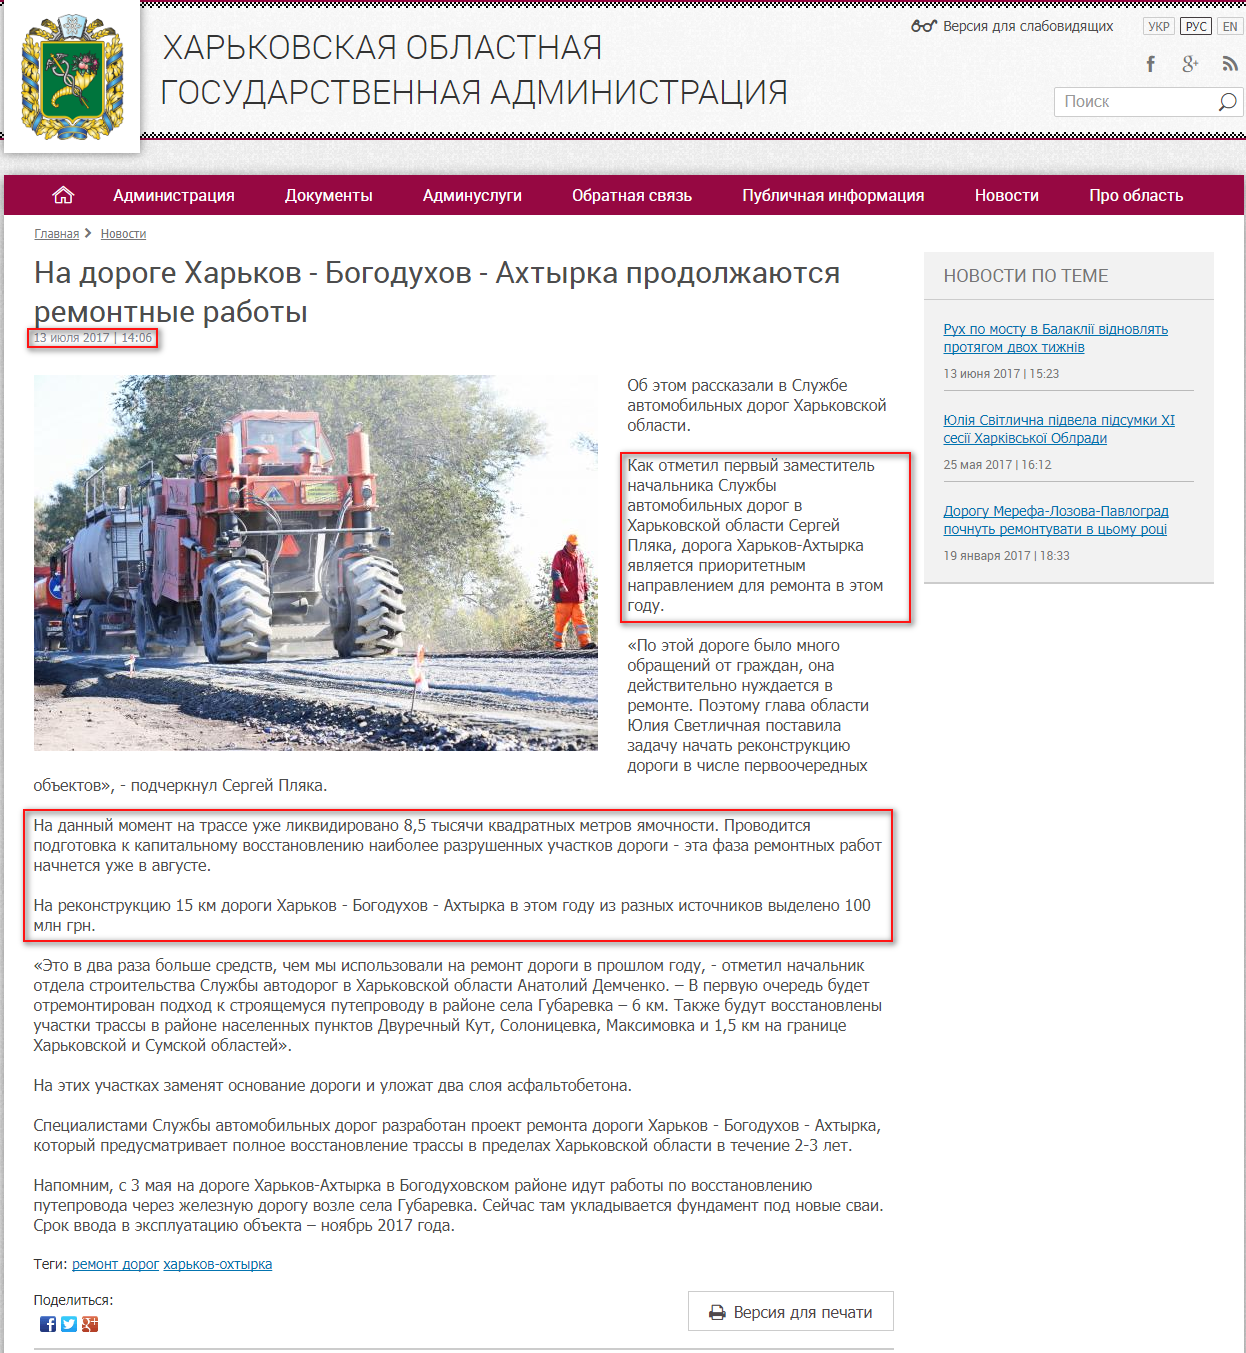 http://kharkivoda.gov.ua/ru/news/87540